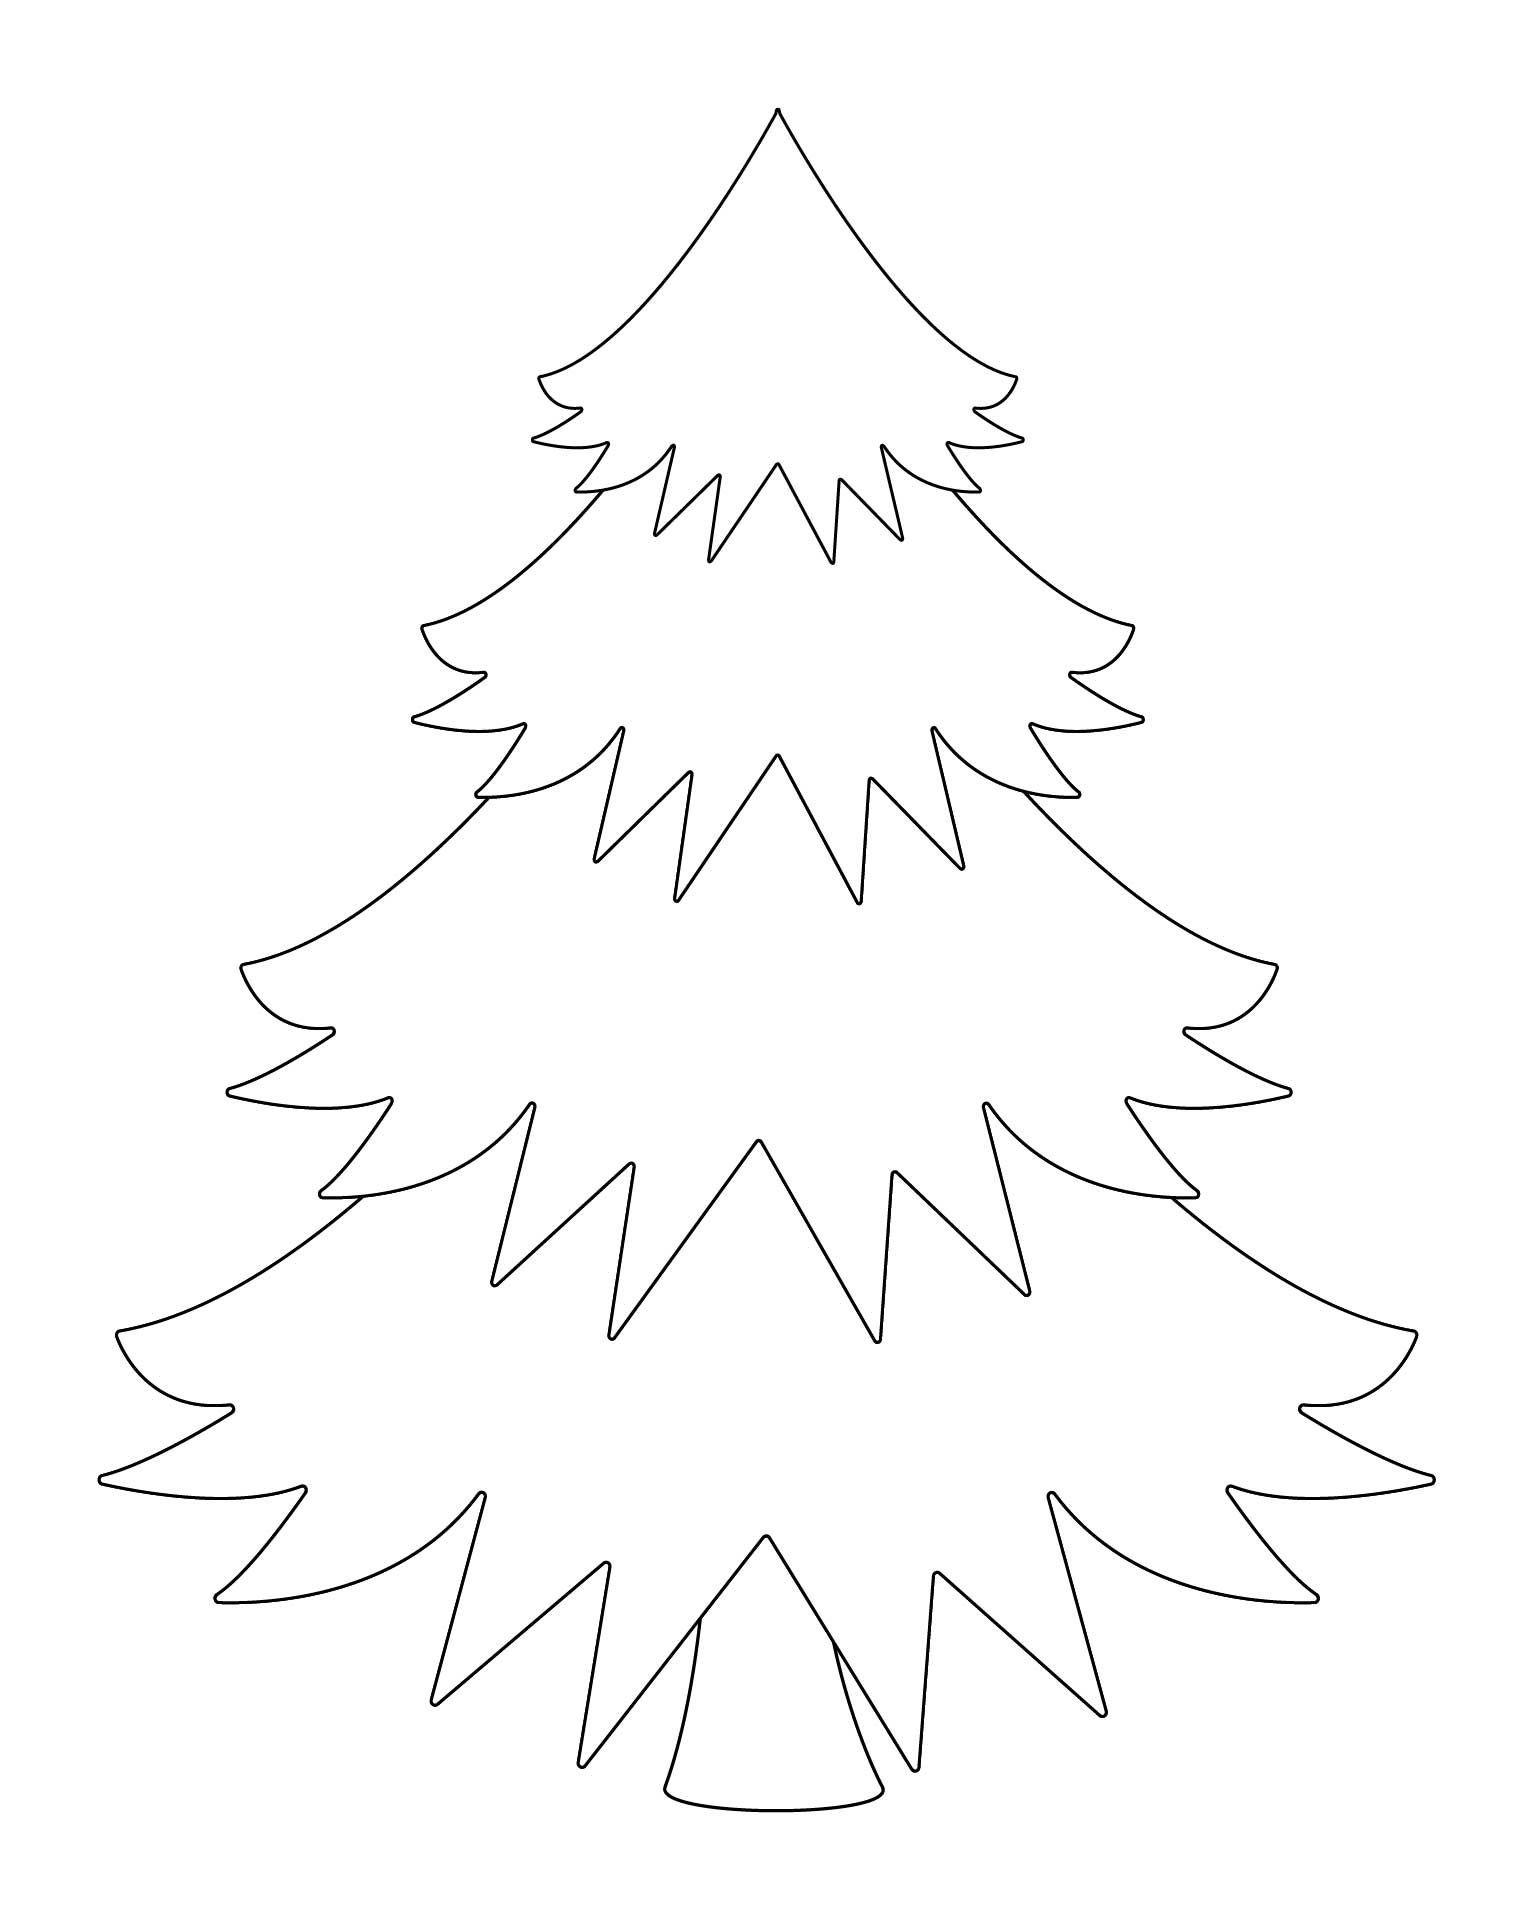 Printable Large Christmas Tree Template